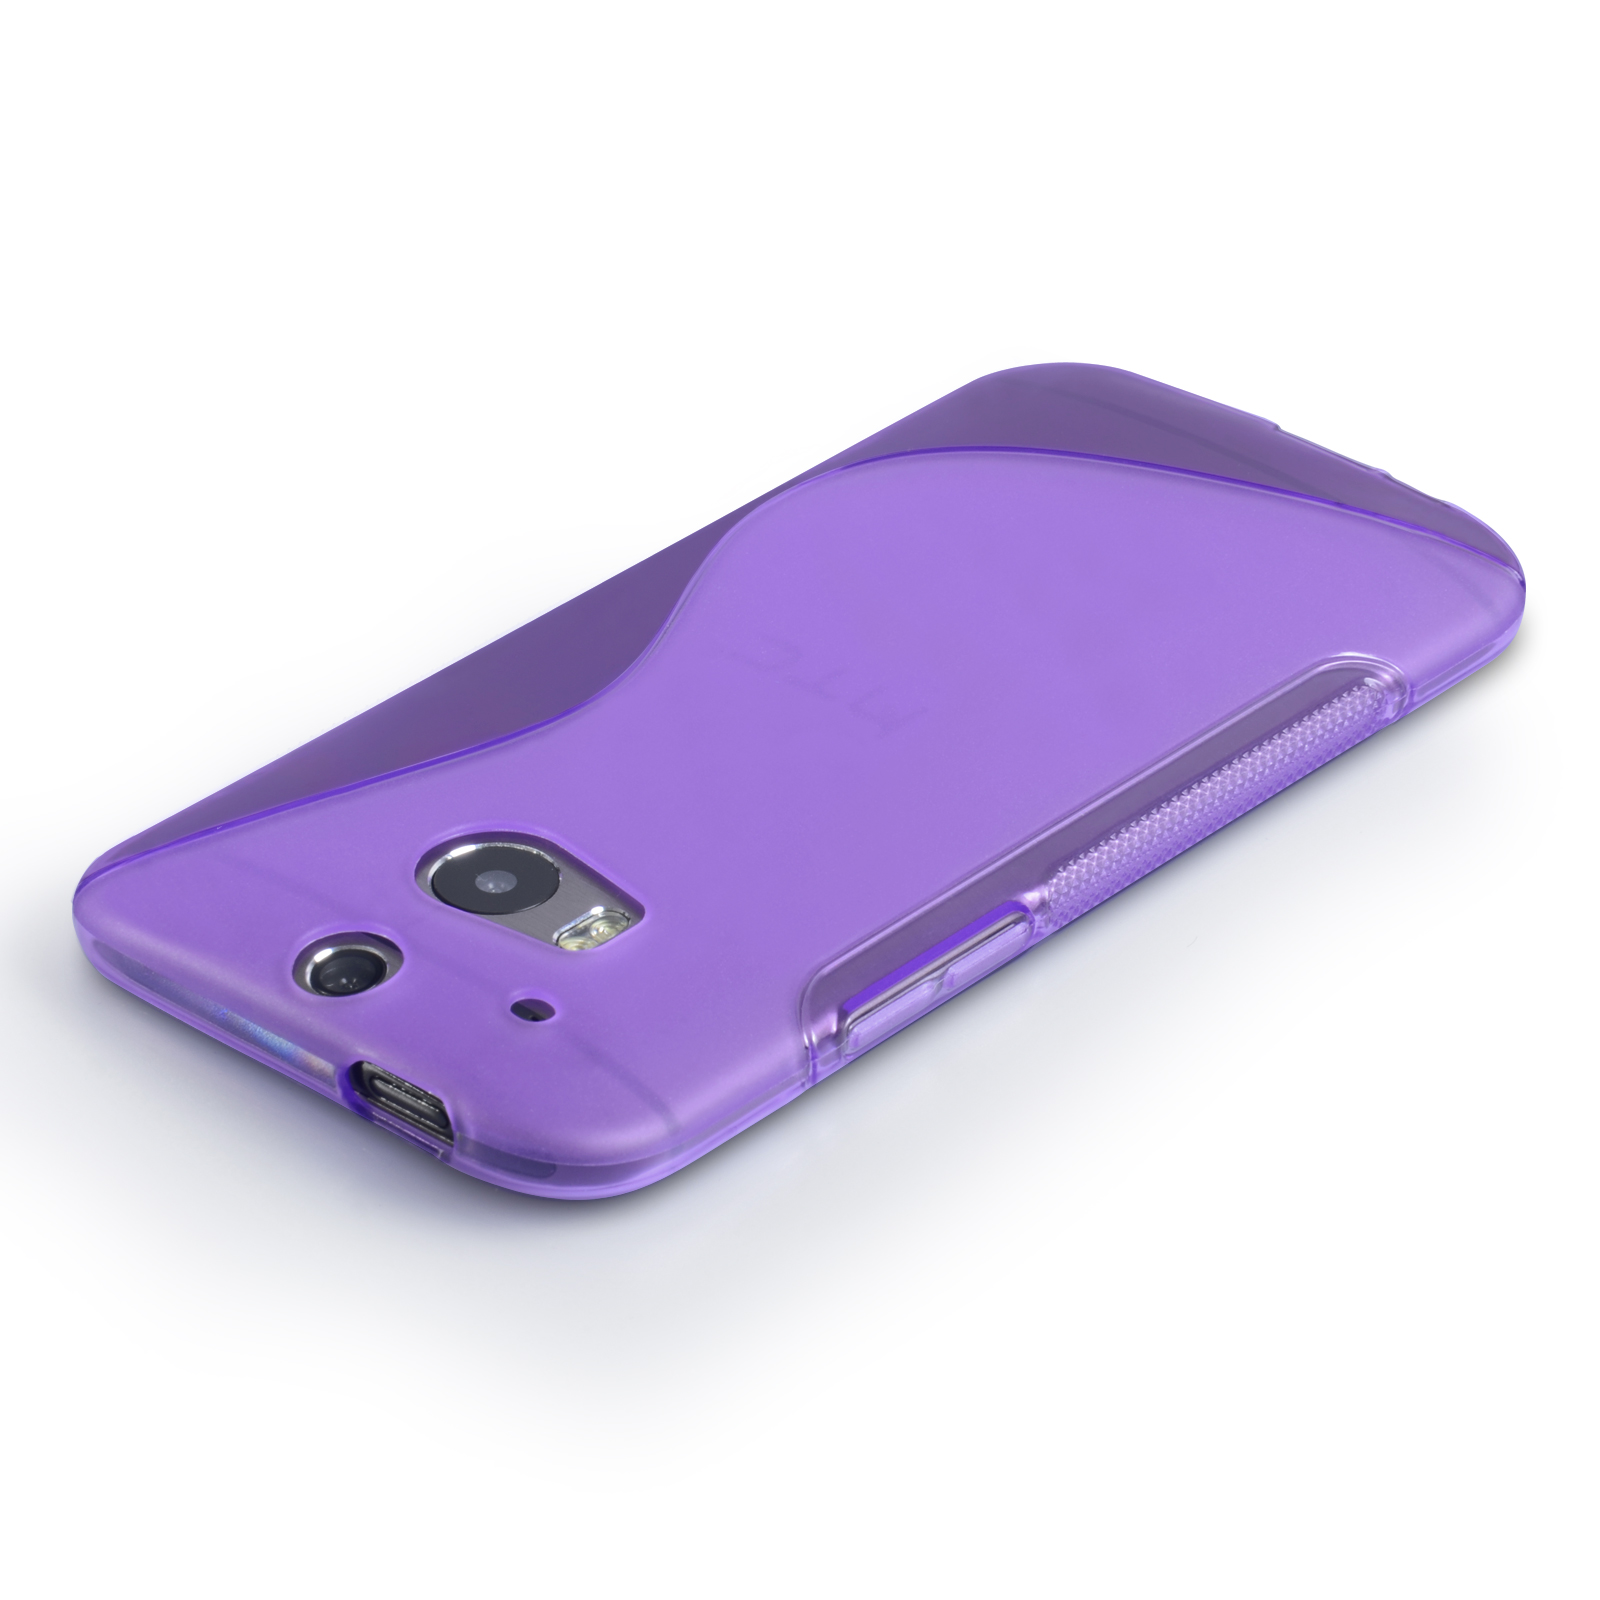 Caseflex HTC One M8 Silicone Gel S-Line Case - Purple